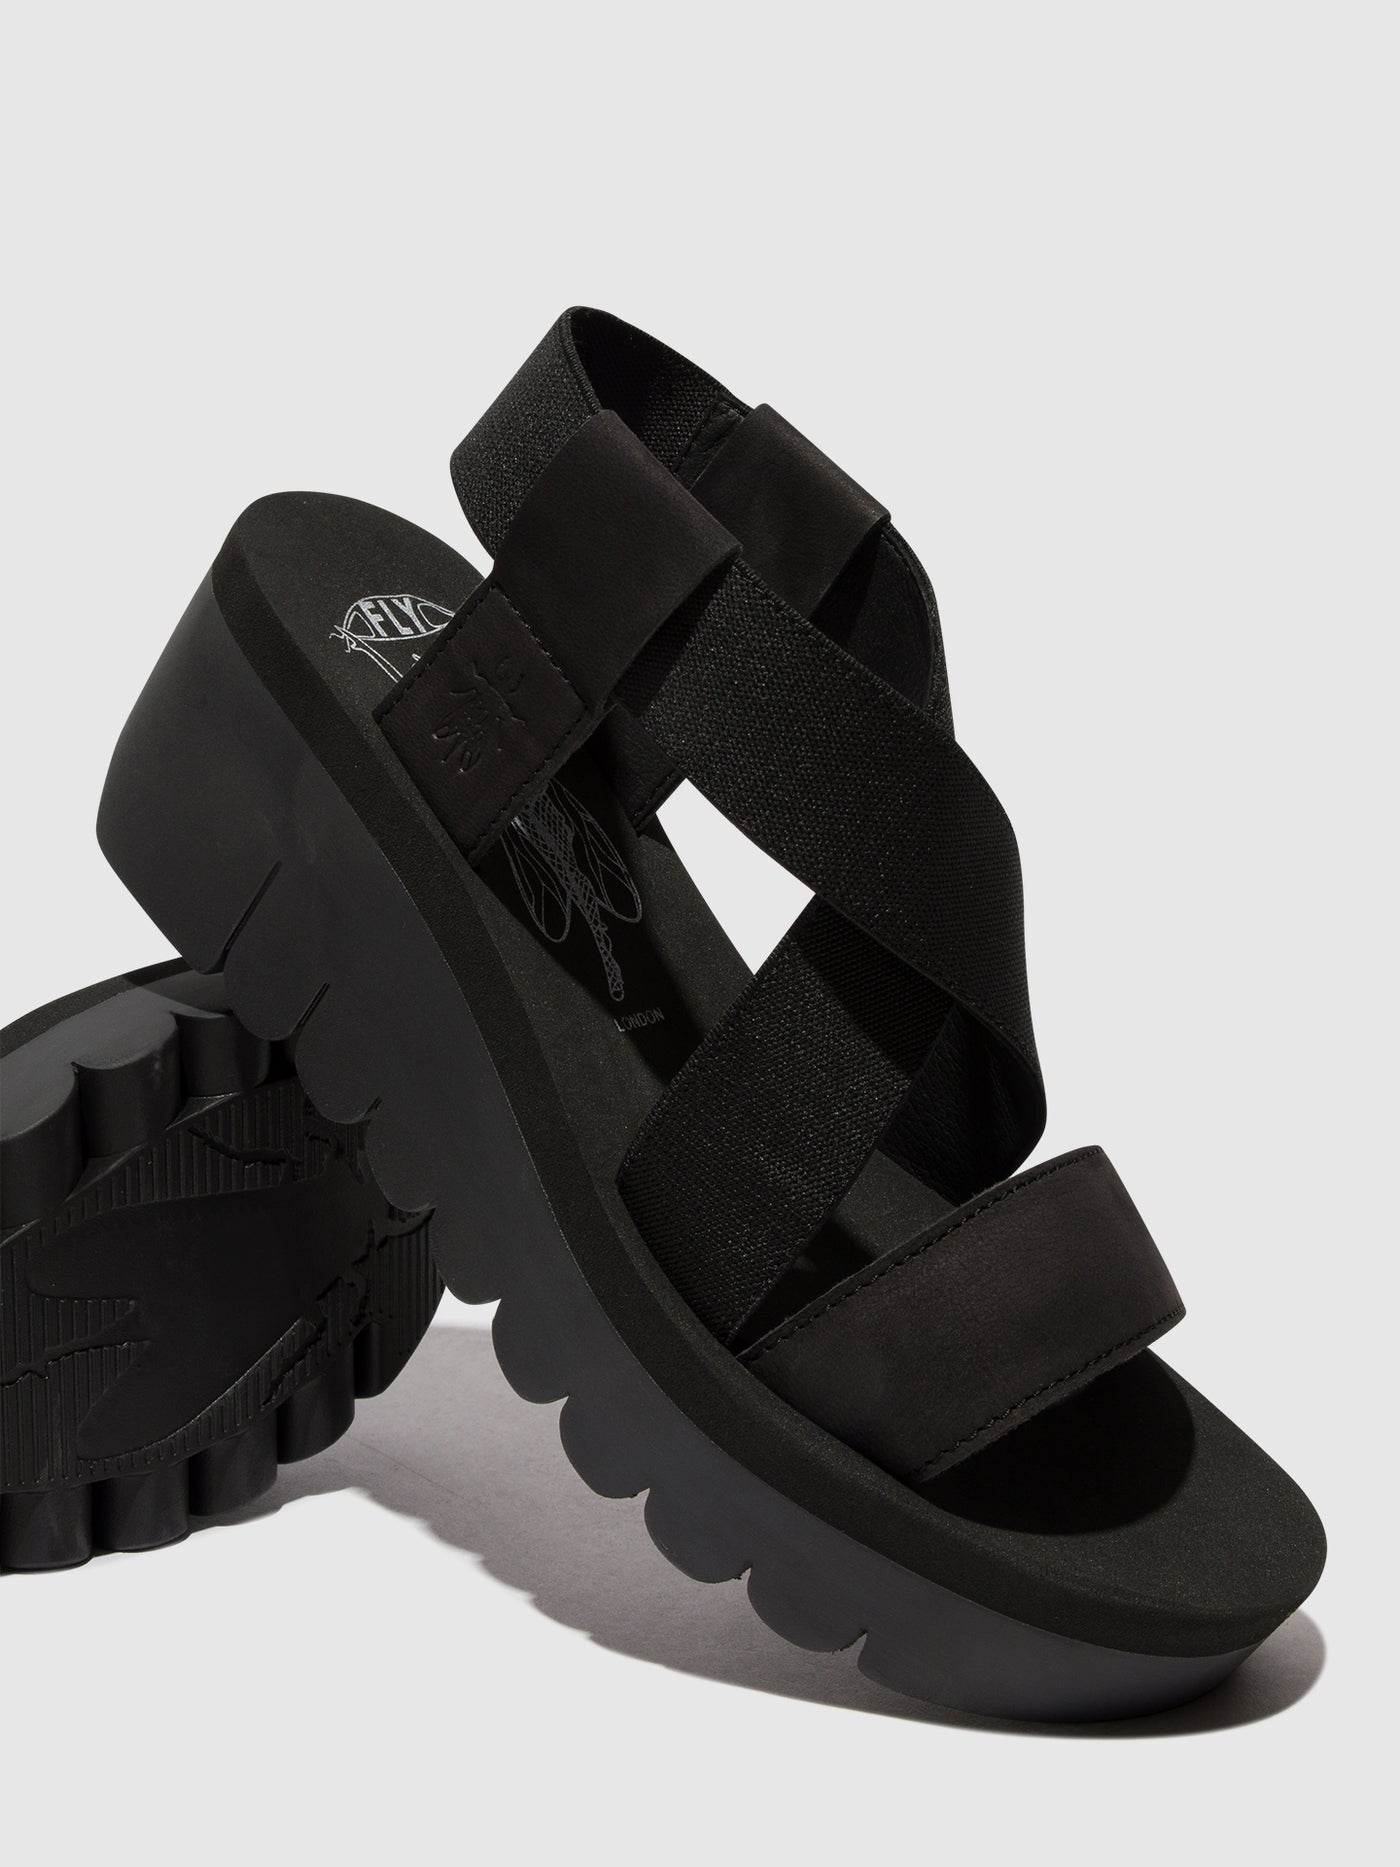 Sling-Back Sandals YABI922FLY BLACK